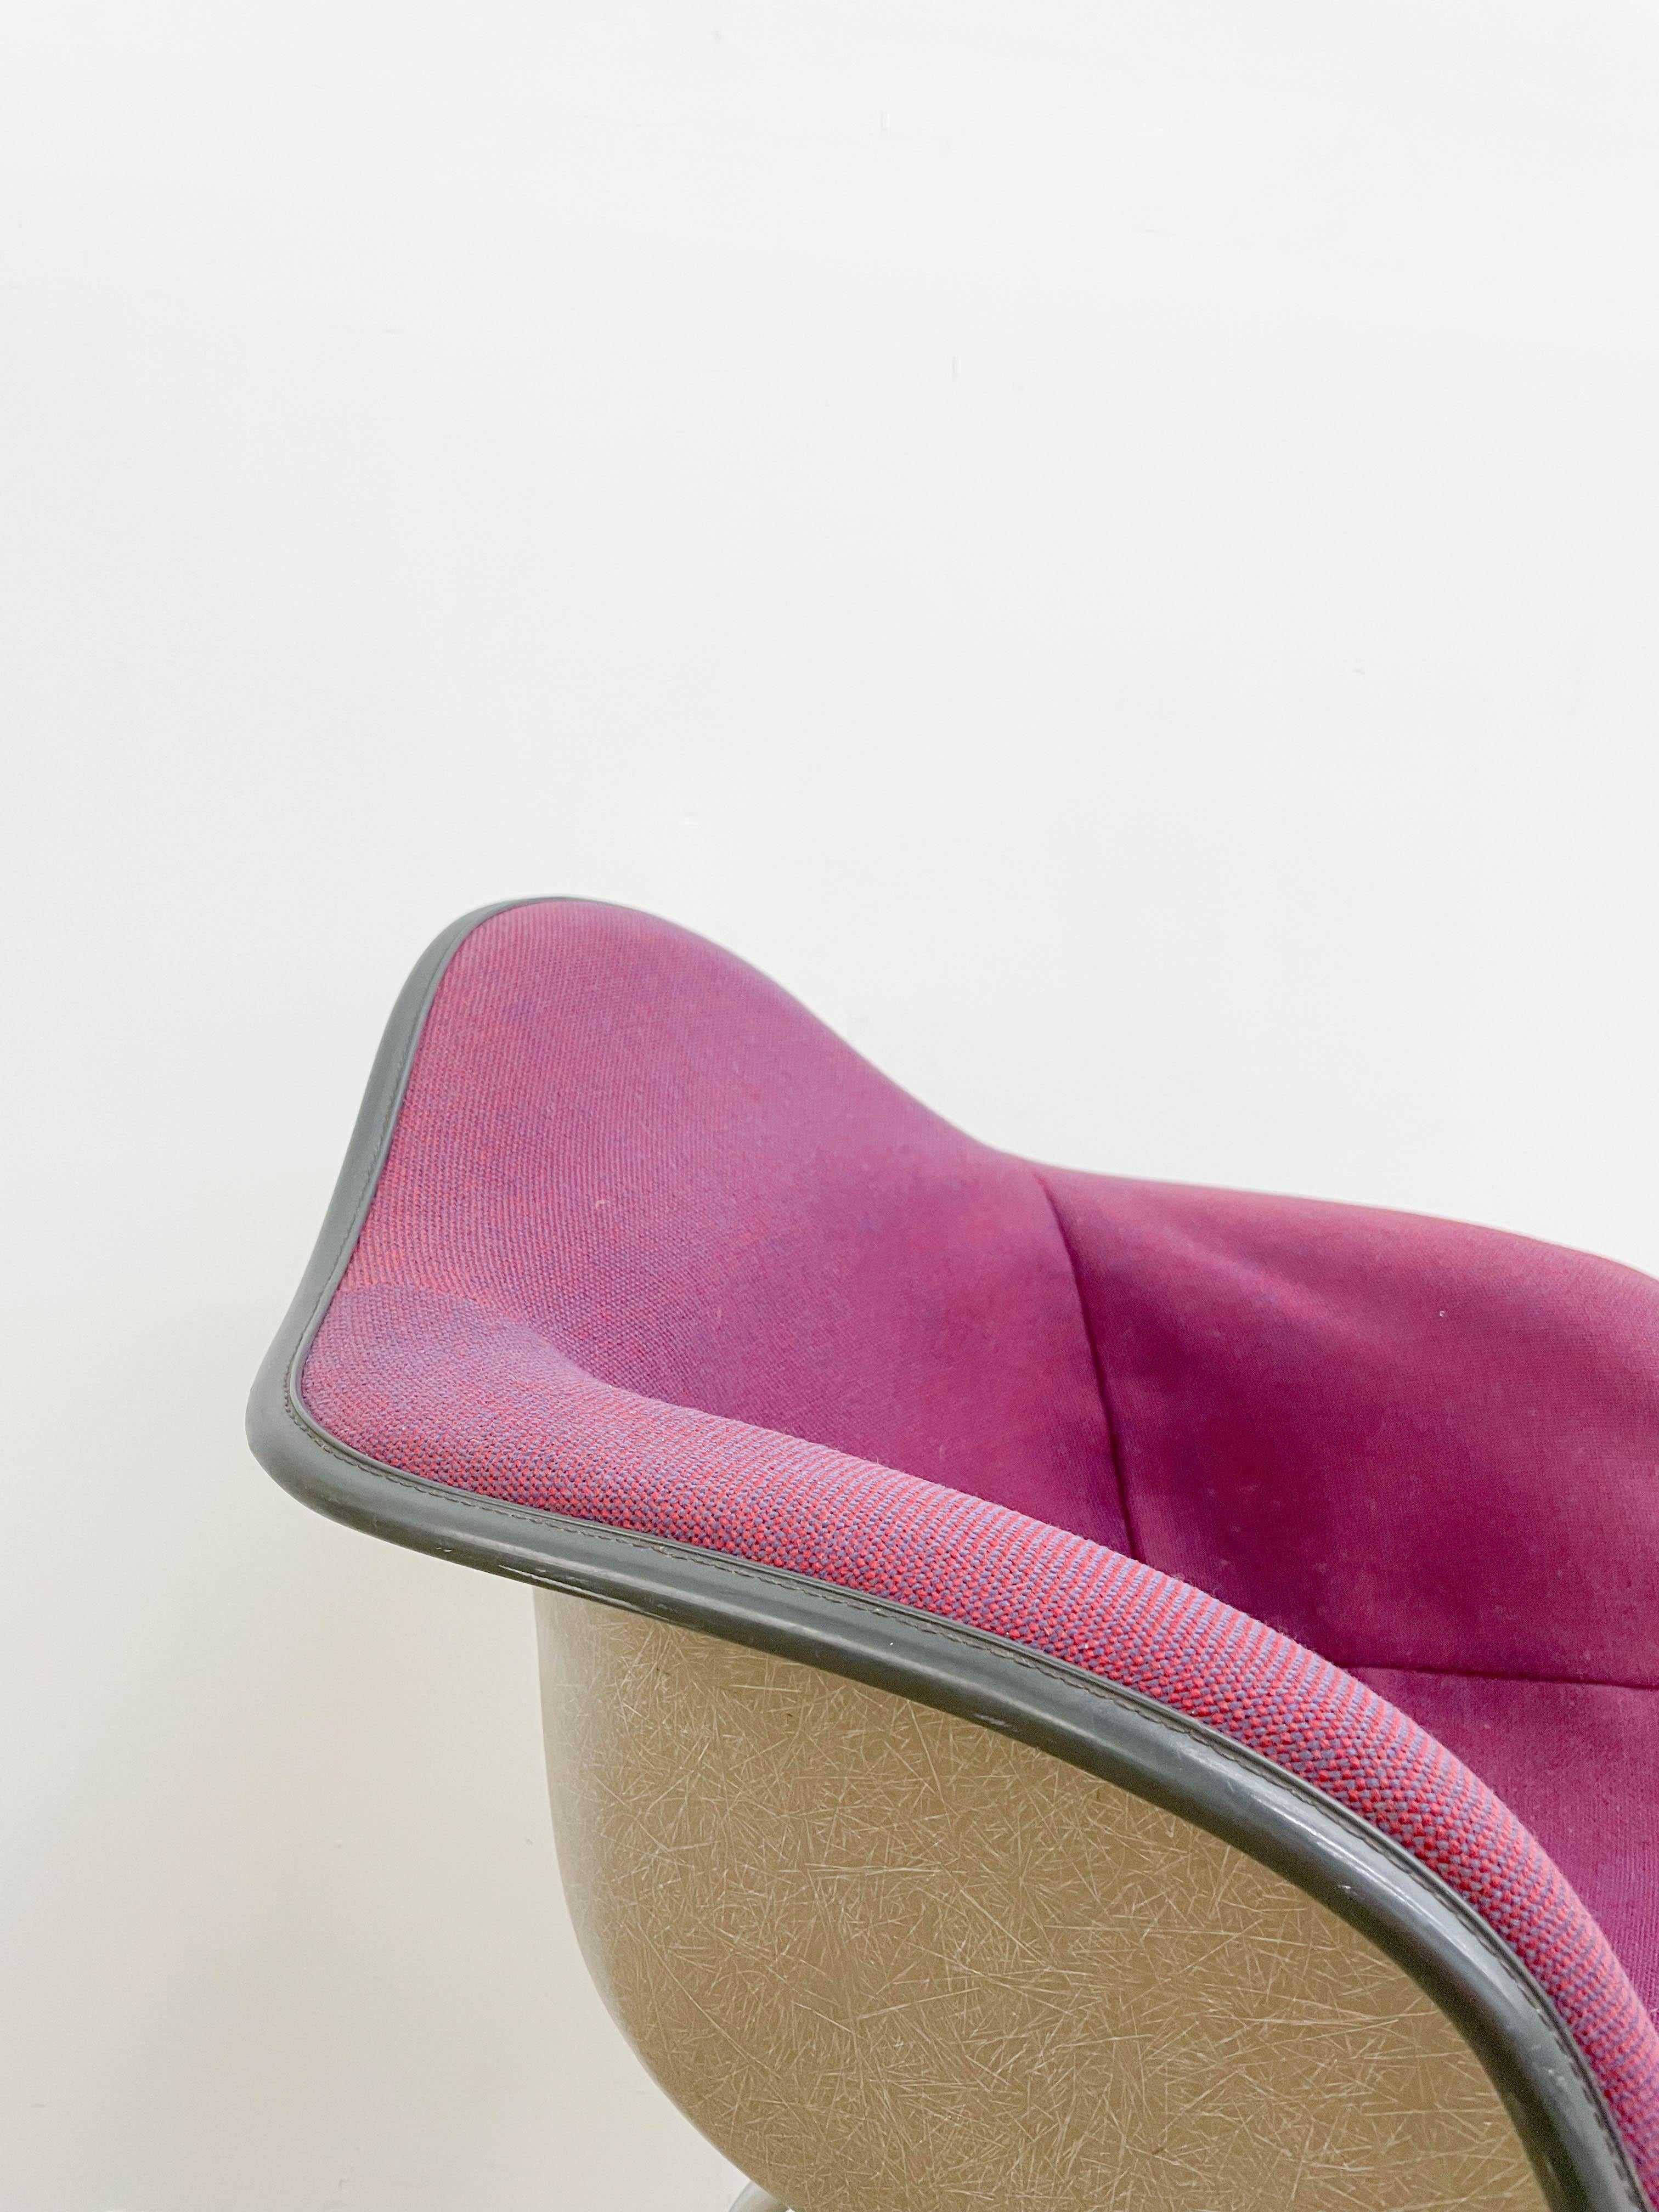 Ikonischer Eames-Sessel aus Fiberglas mit Stoffbezug von Alexander Girard auf einem verzinkten Fuß. Der Stuhl hat einen neuen Schaumstoff, der ihn sehr bequem macht. Der Stoffbezug weist an der unteren Rückenlehne des Stuhls einige lose Stellen auf.